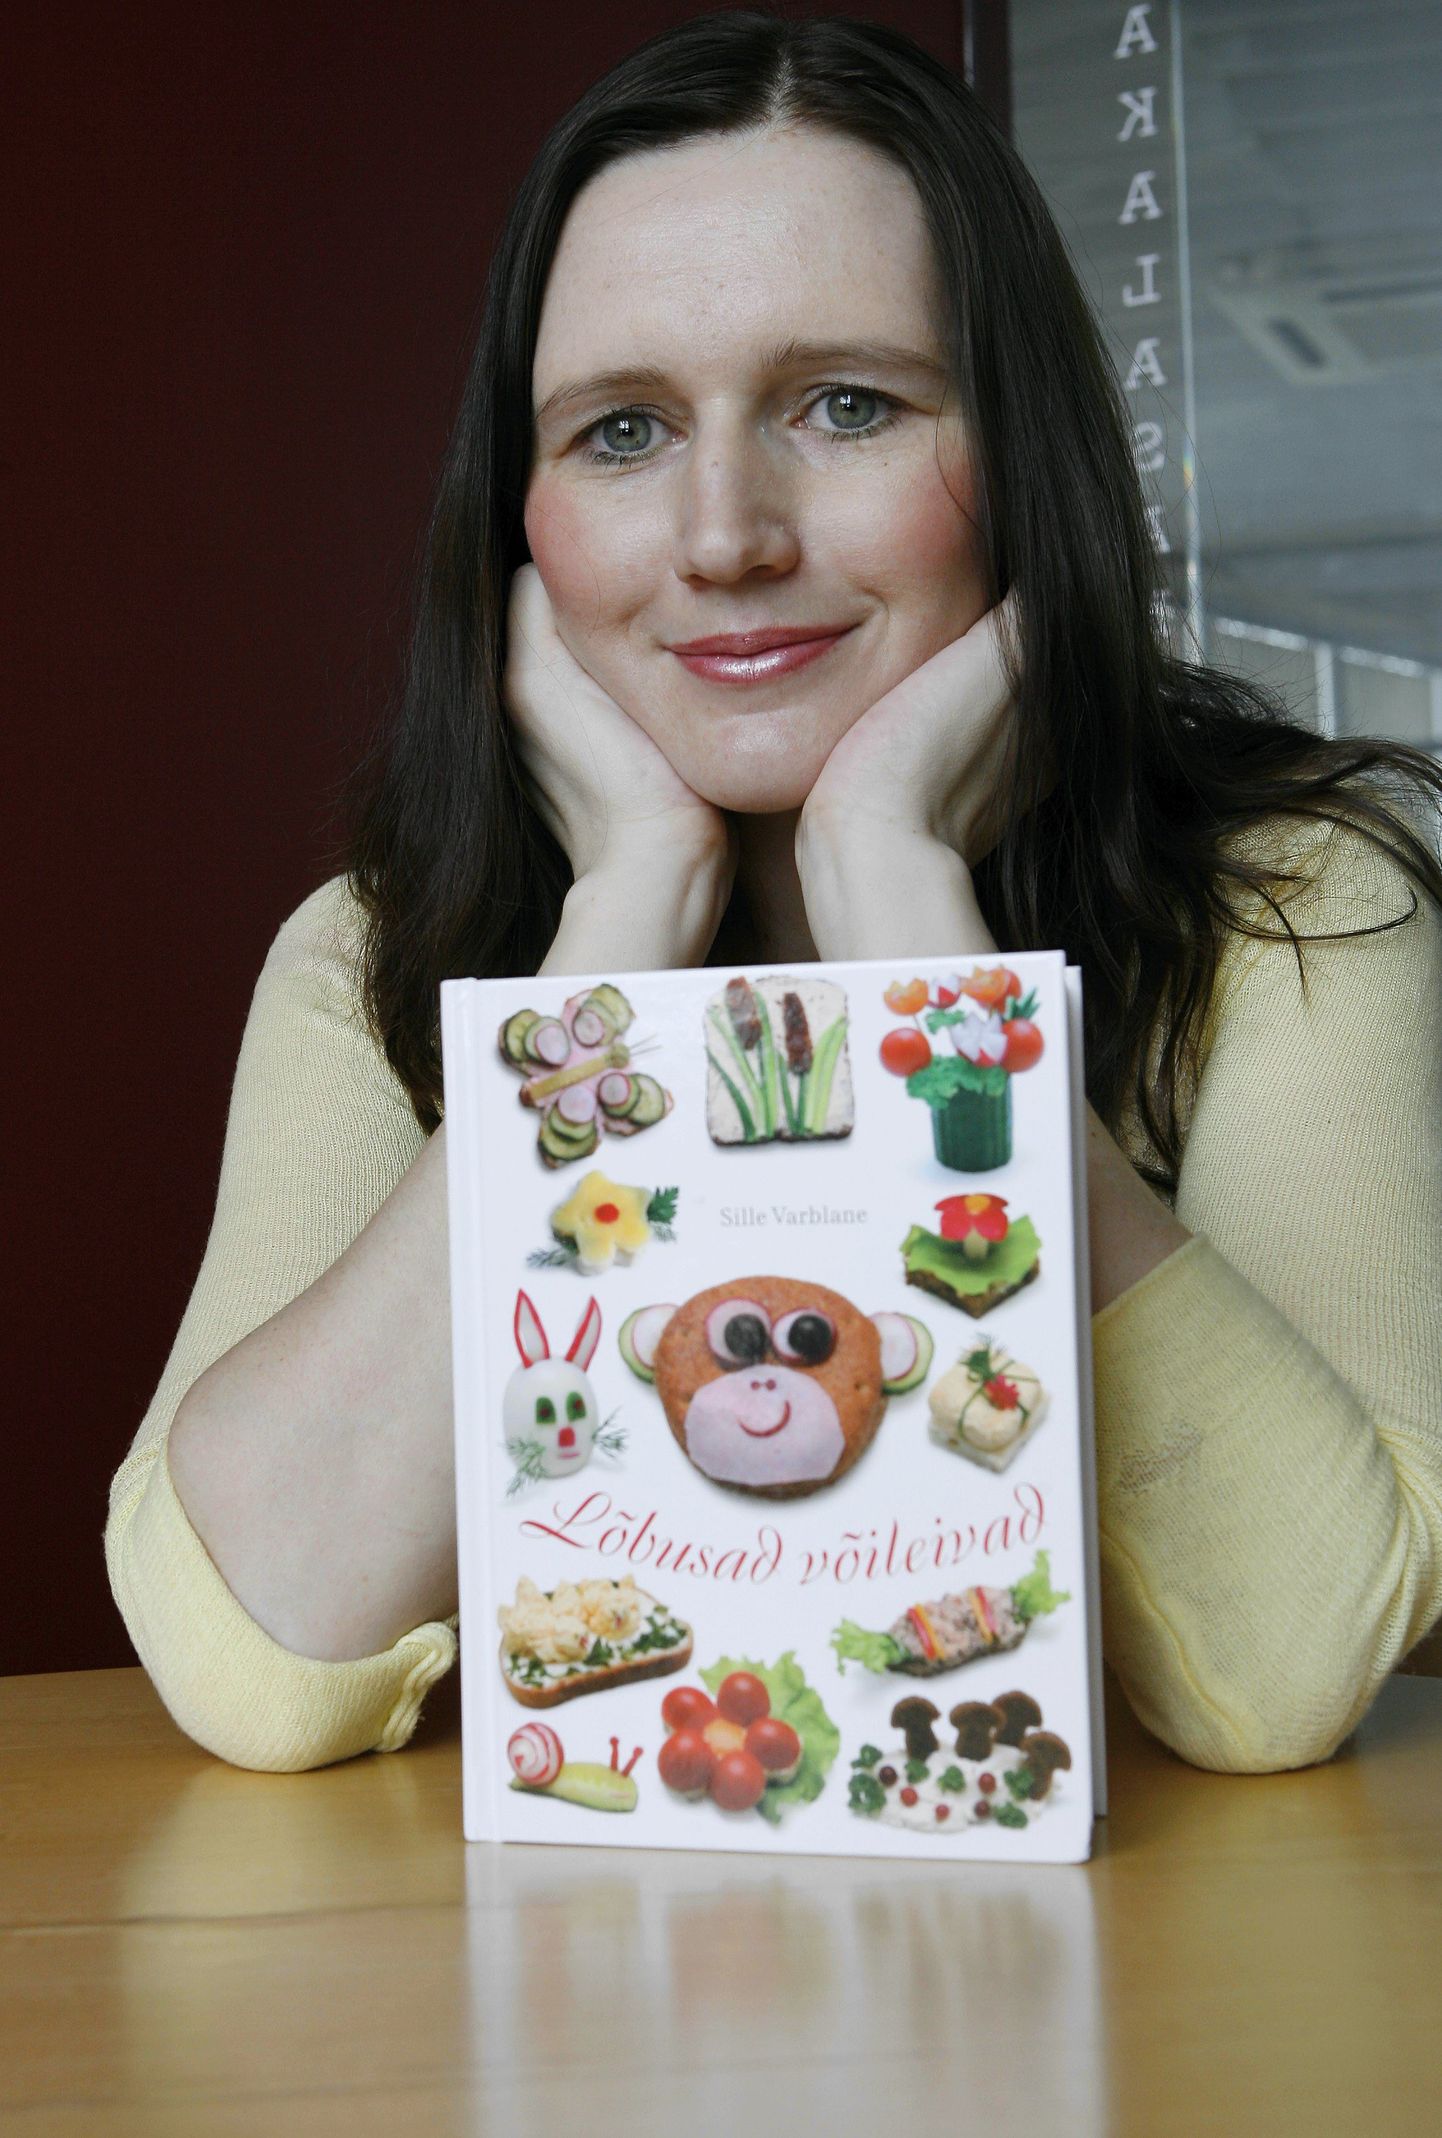 Eesti ühe suurima toidublogi autor Sille Varblane koostas retseptiraamatu, kust saab ammutada ideid pere pisematele toidu valmistamiseks.